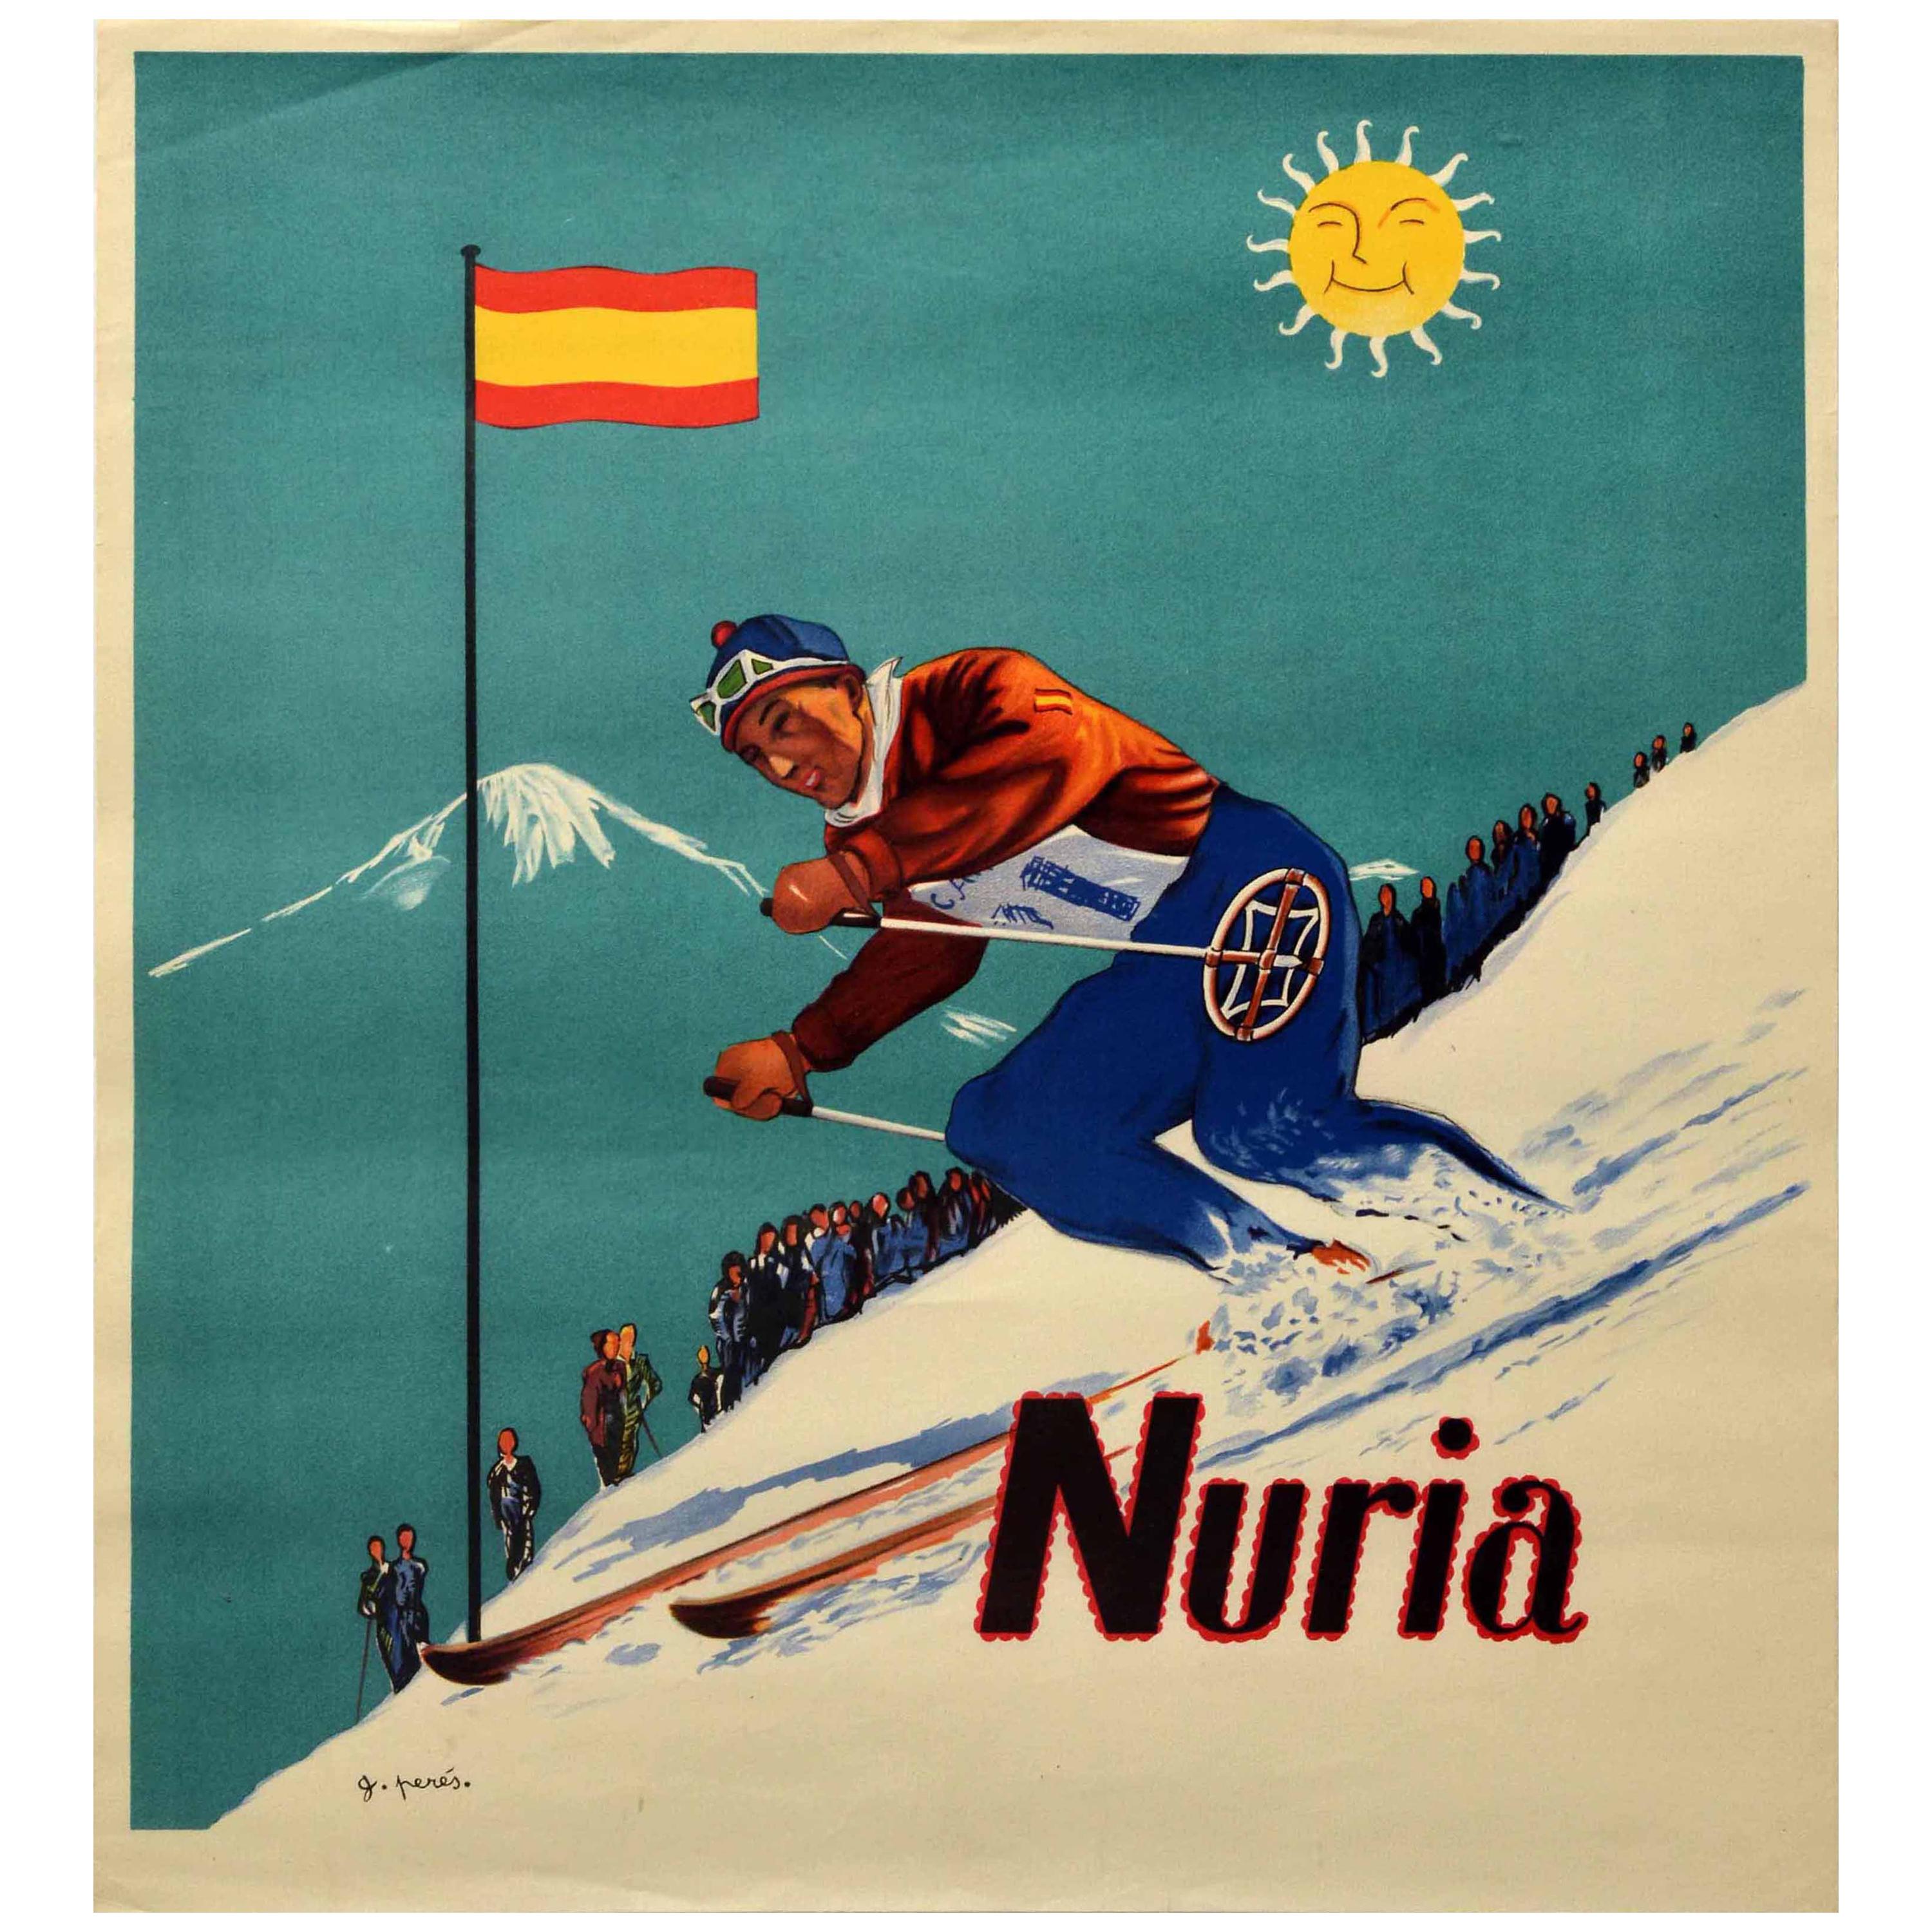 Original-Vintage-Ski-Poster, Nuria, Katalonien, Spanien, Pyrenäen, Ski-Wintersport